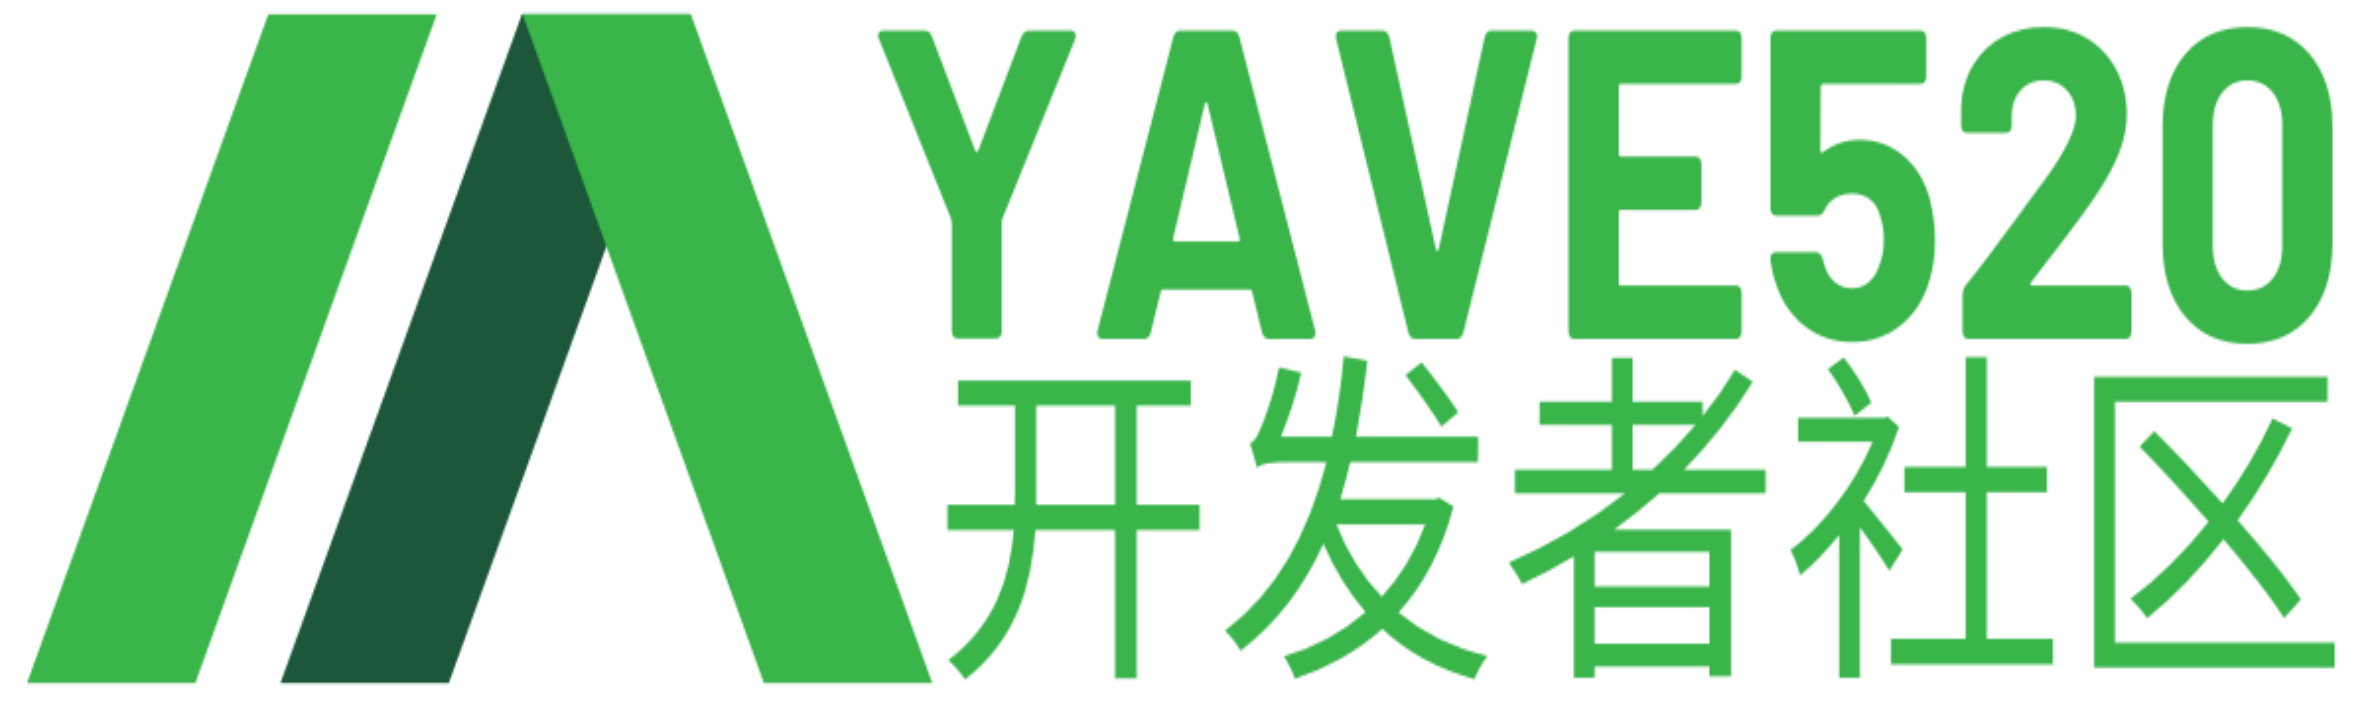 CSS选择器-Yave520-专业开发者社区